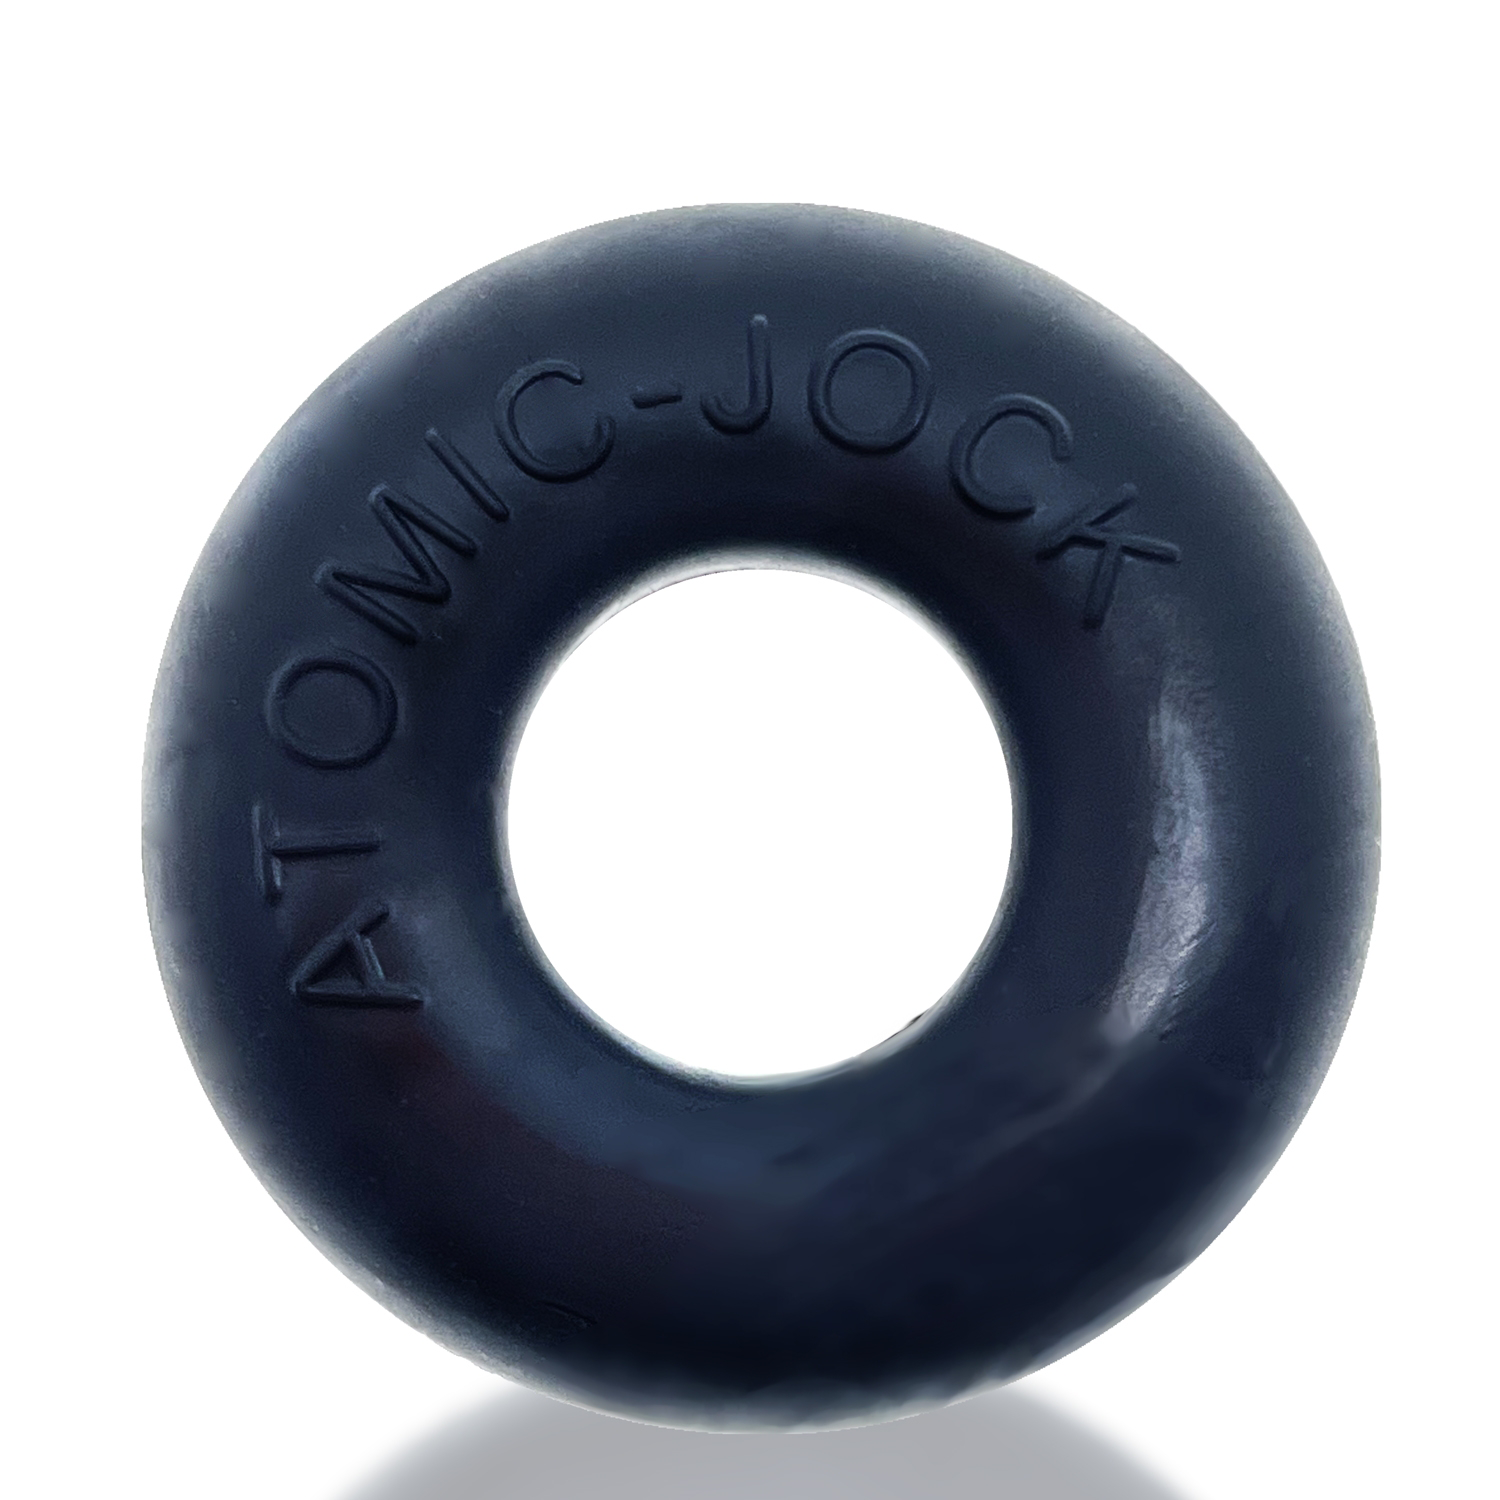 Do-Nut-2 Large Atomic Jock Cockring - Night Black OX-AJ1025-2NGT